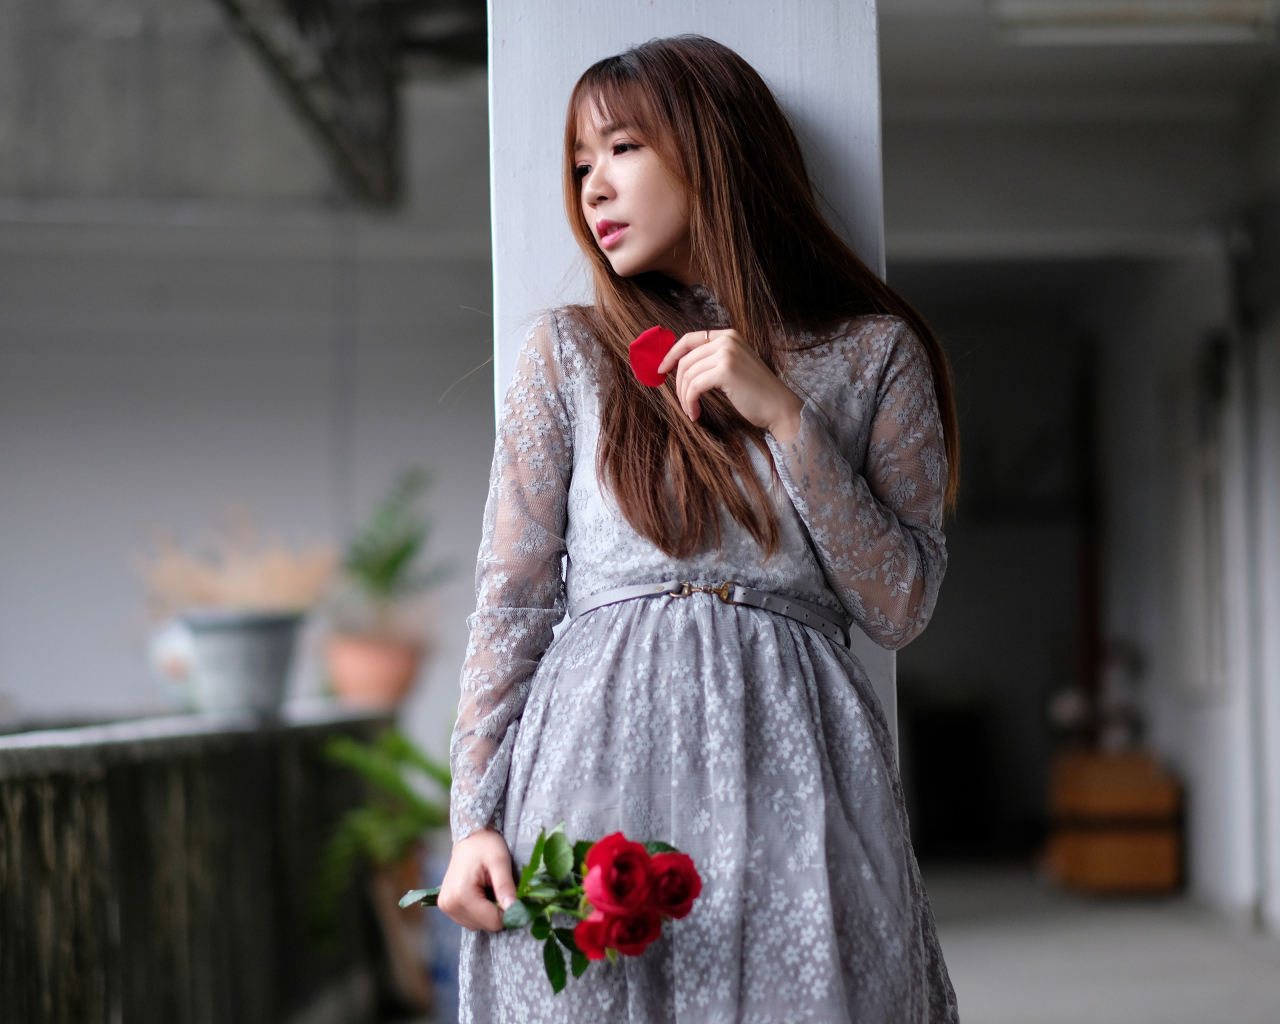 Девушка азиатка в сером платье с цветами розы